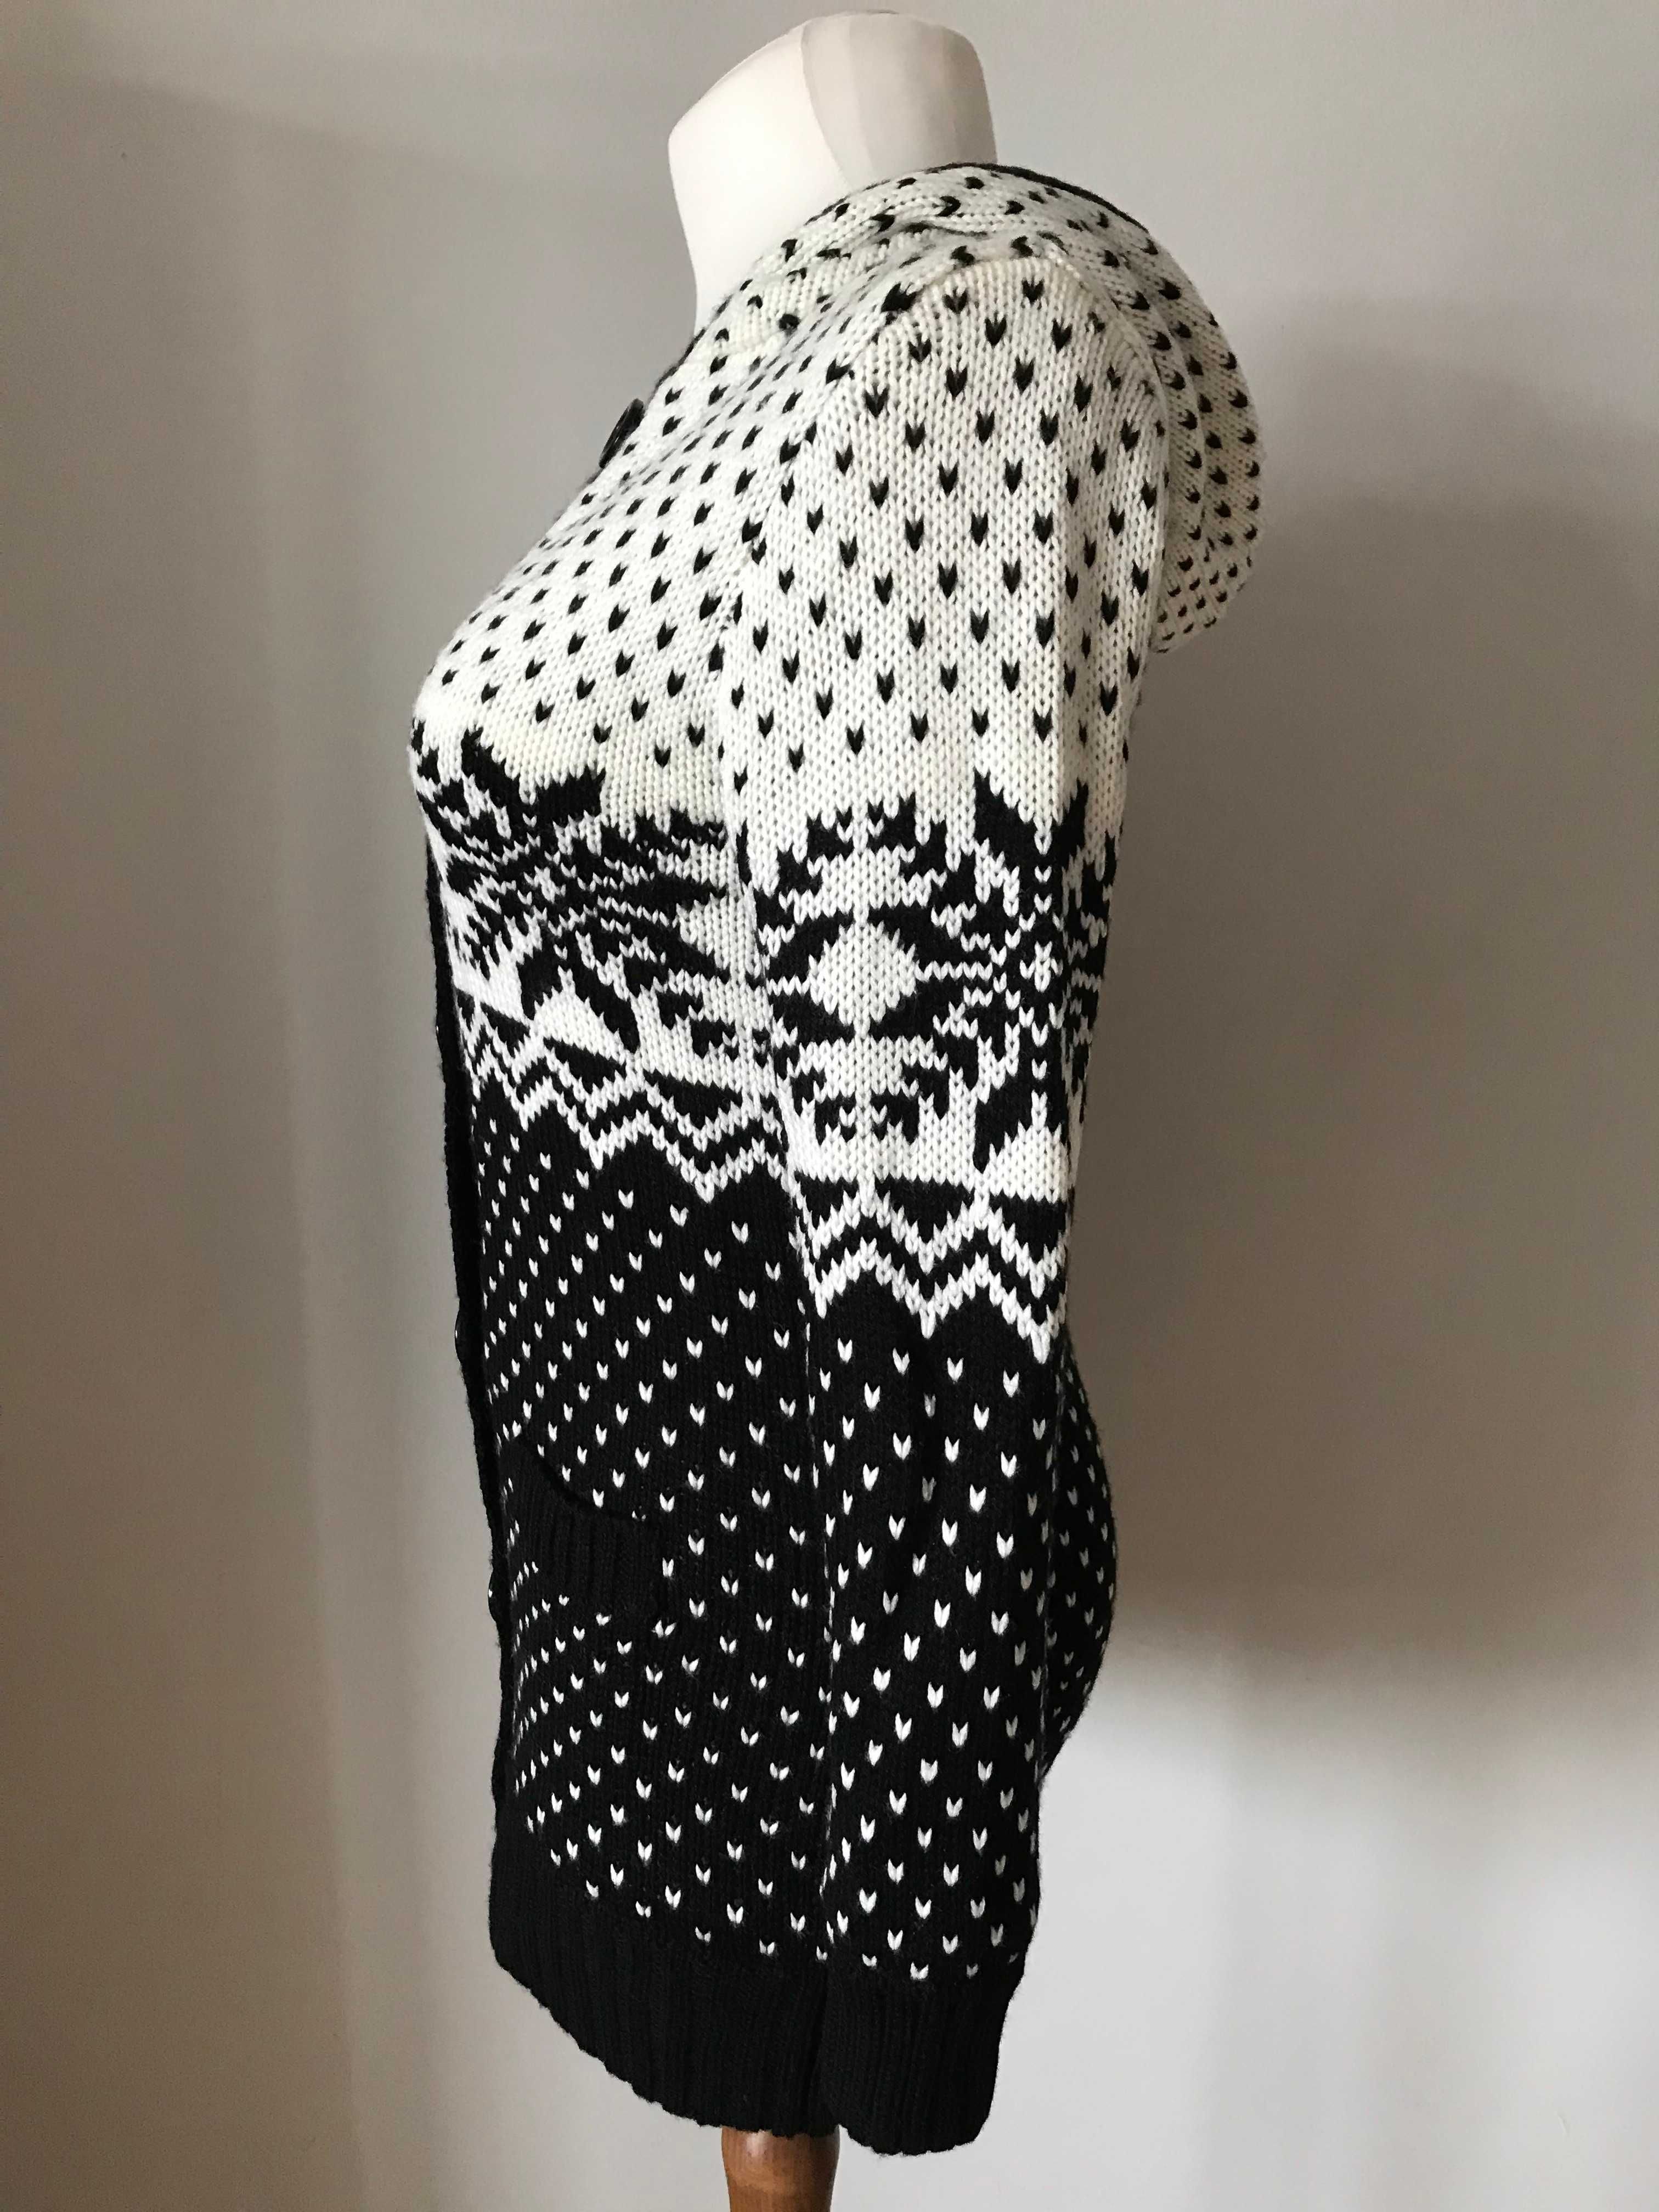 Kardigan czarno biały sweter z kapturem r. 40/42  norweski wzór NOWY